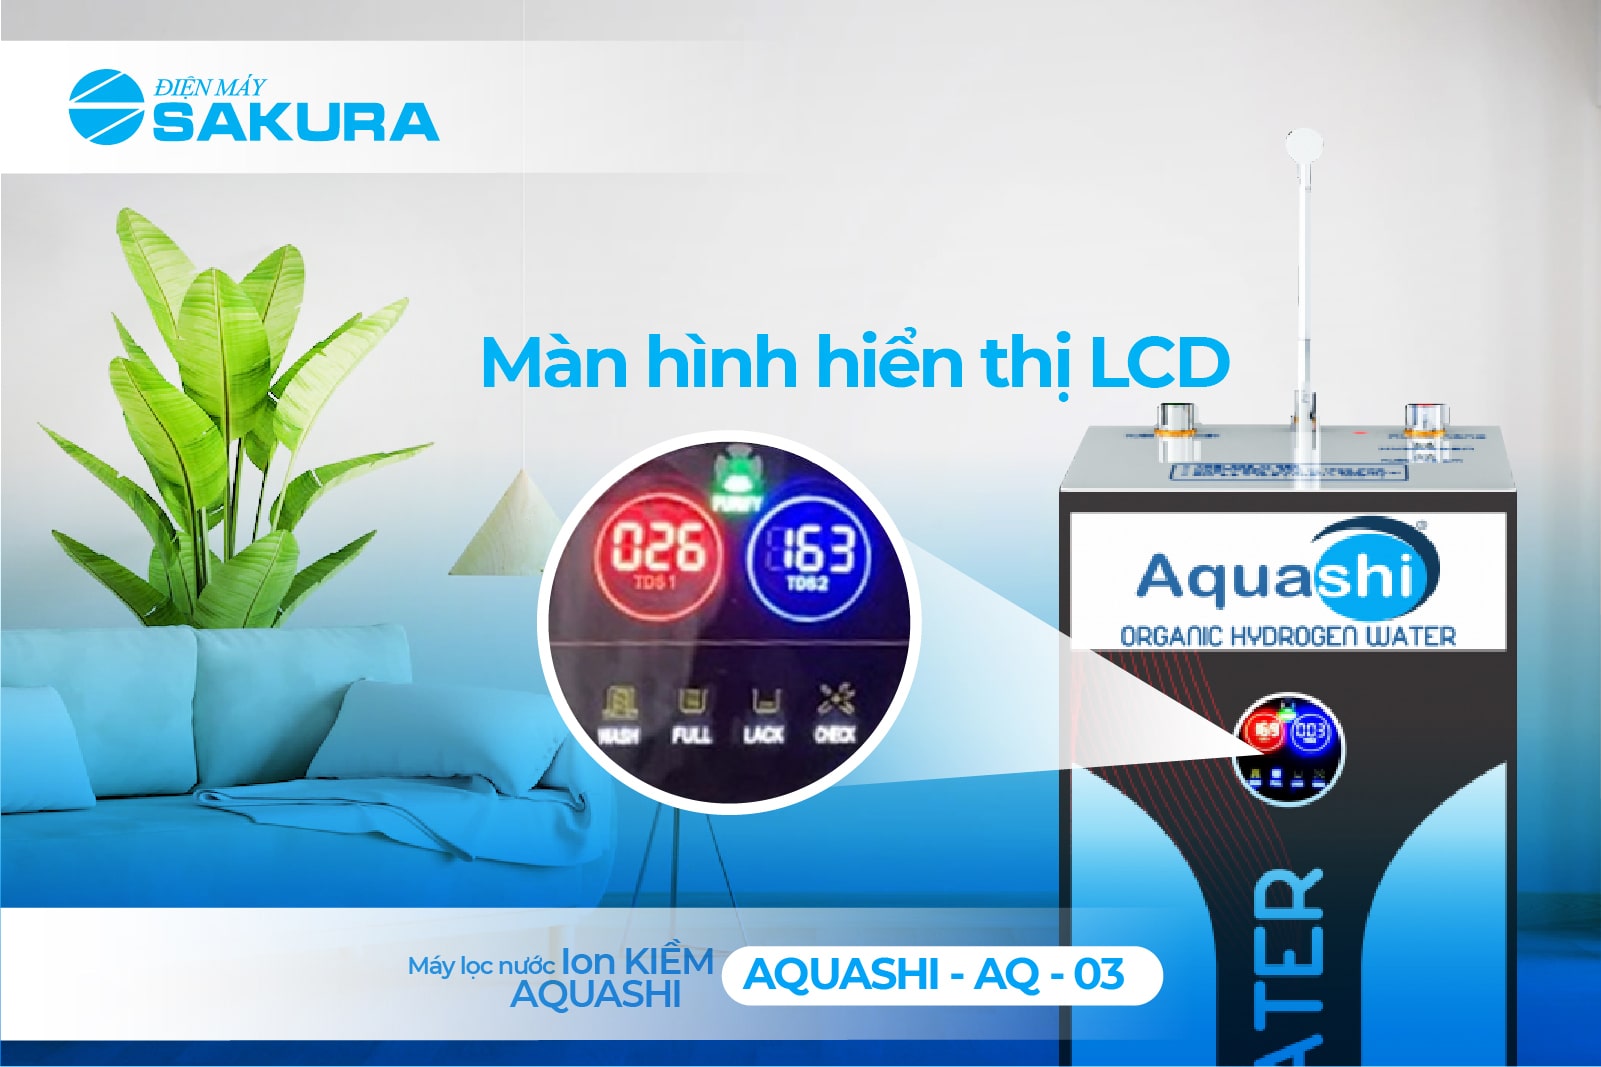 AQ-03 Aquashi được trang bị màn hình hiển thị LCD để người dùng tiện theo dõi các thông số 